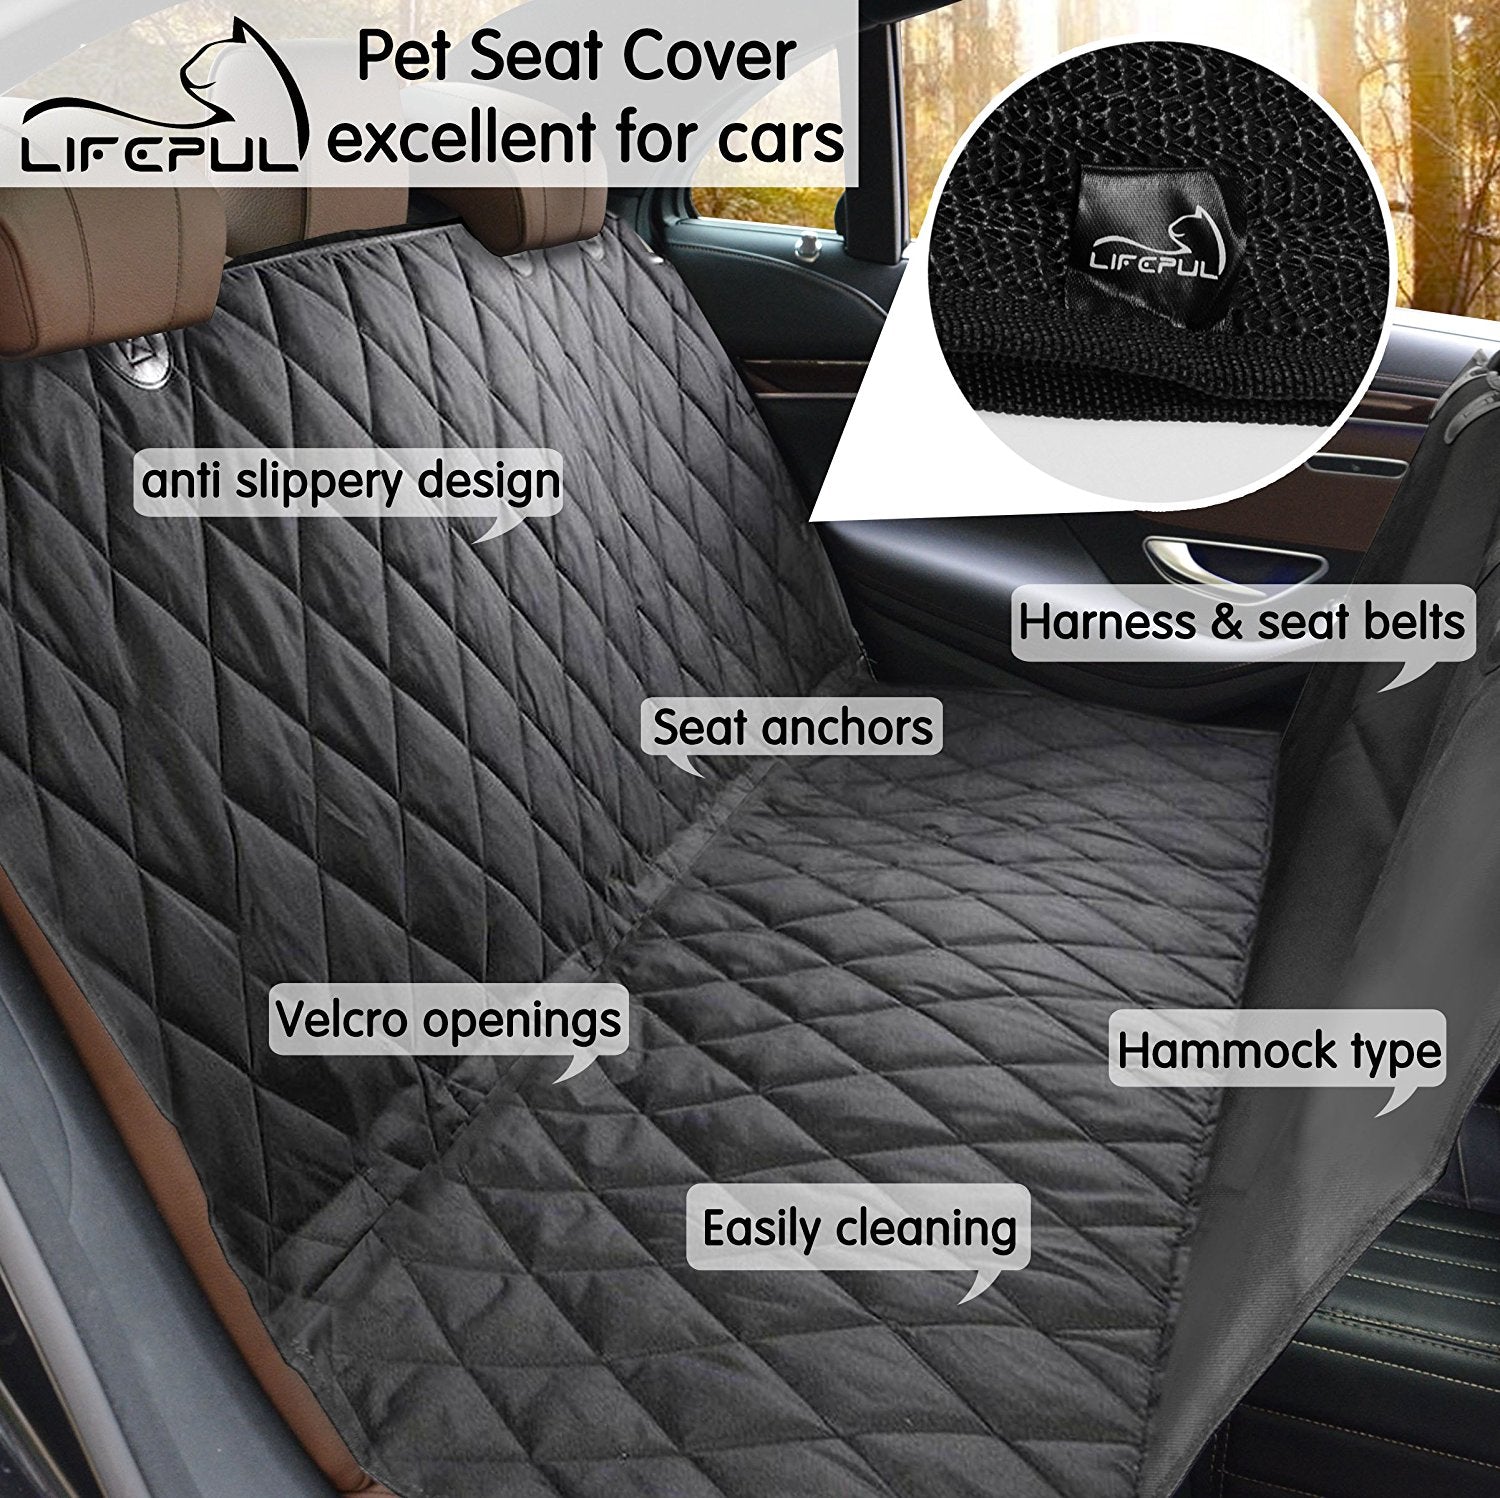 Housse protection siège arrière voiture pour chien – Fit Super-Humain